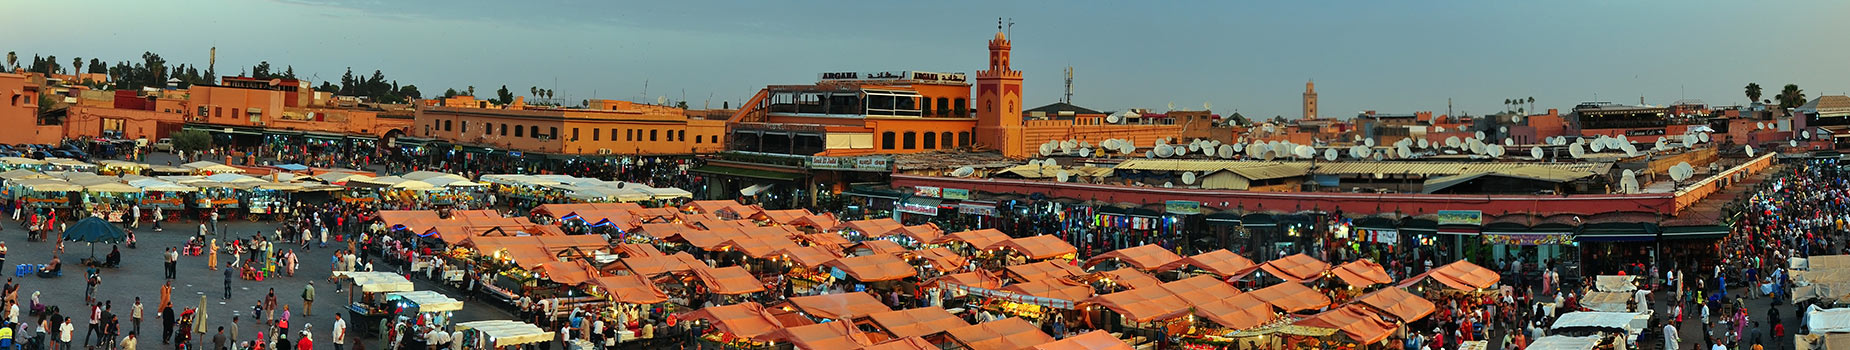 Citytrip Marrakech